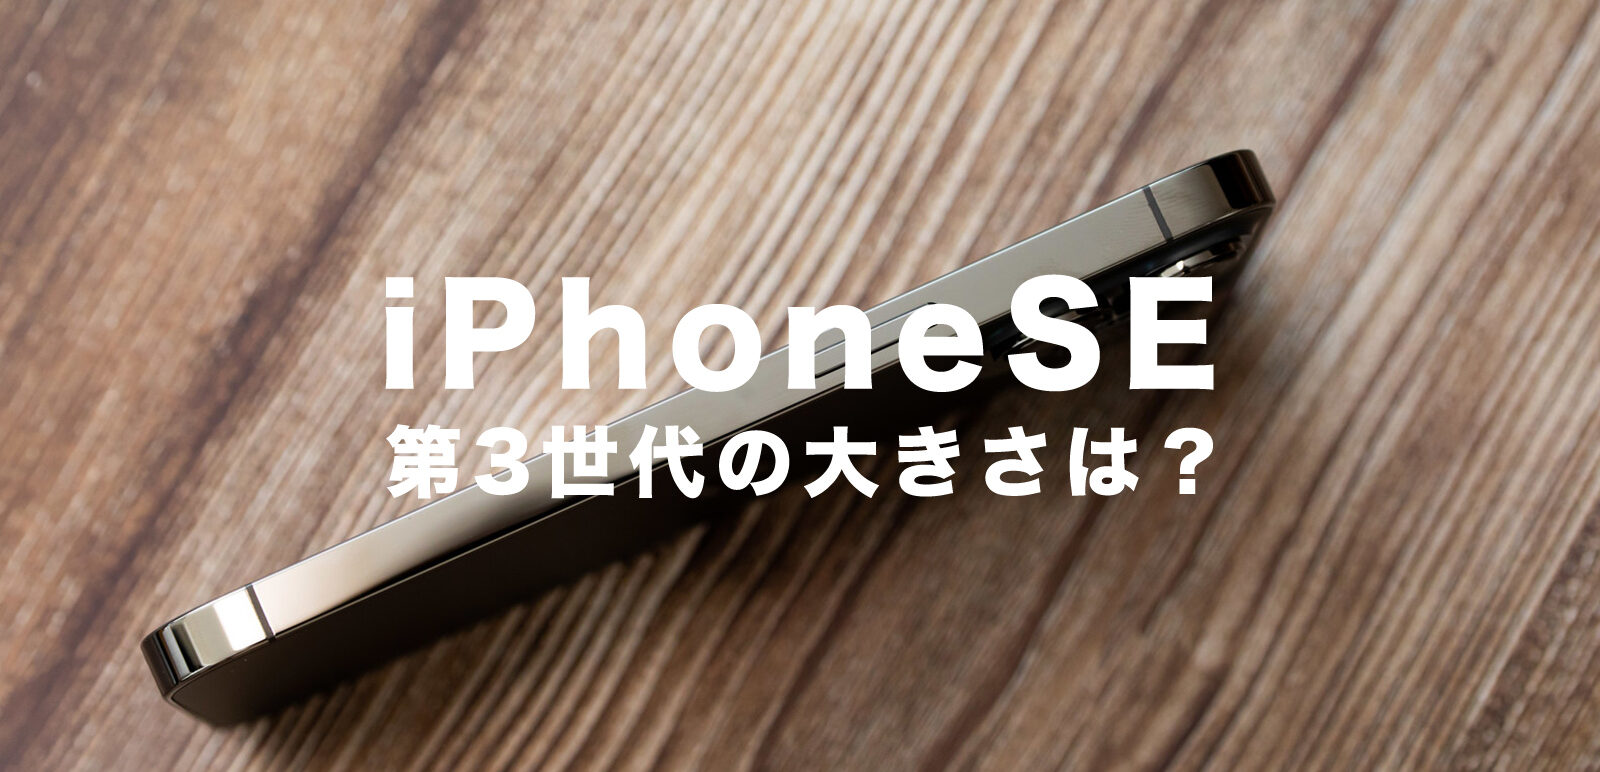 新型iPhoneSE3(第3世代)の大きさや画面サイズはどうなる？のサムネイル画像